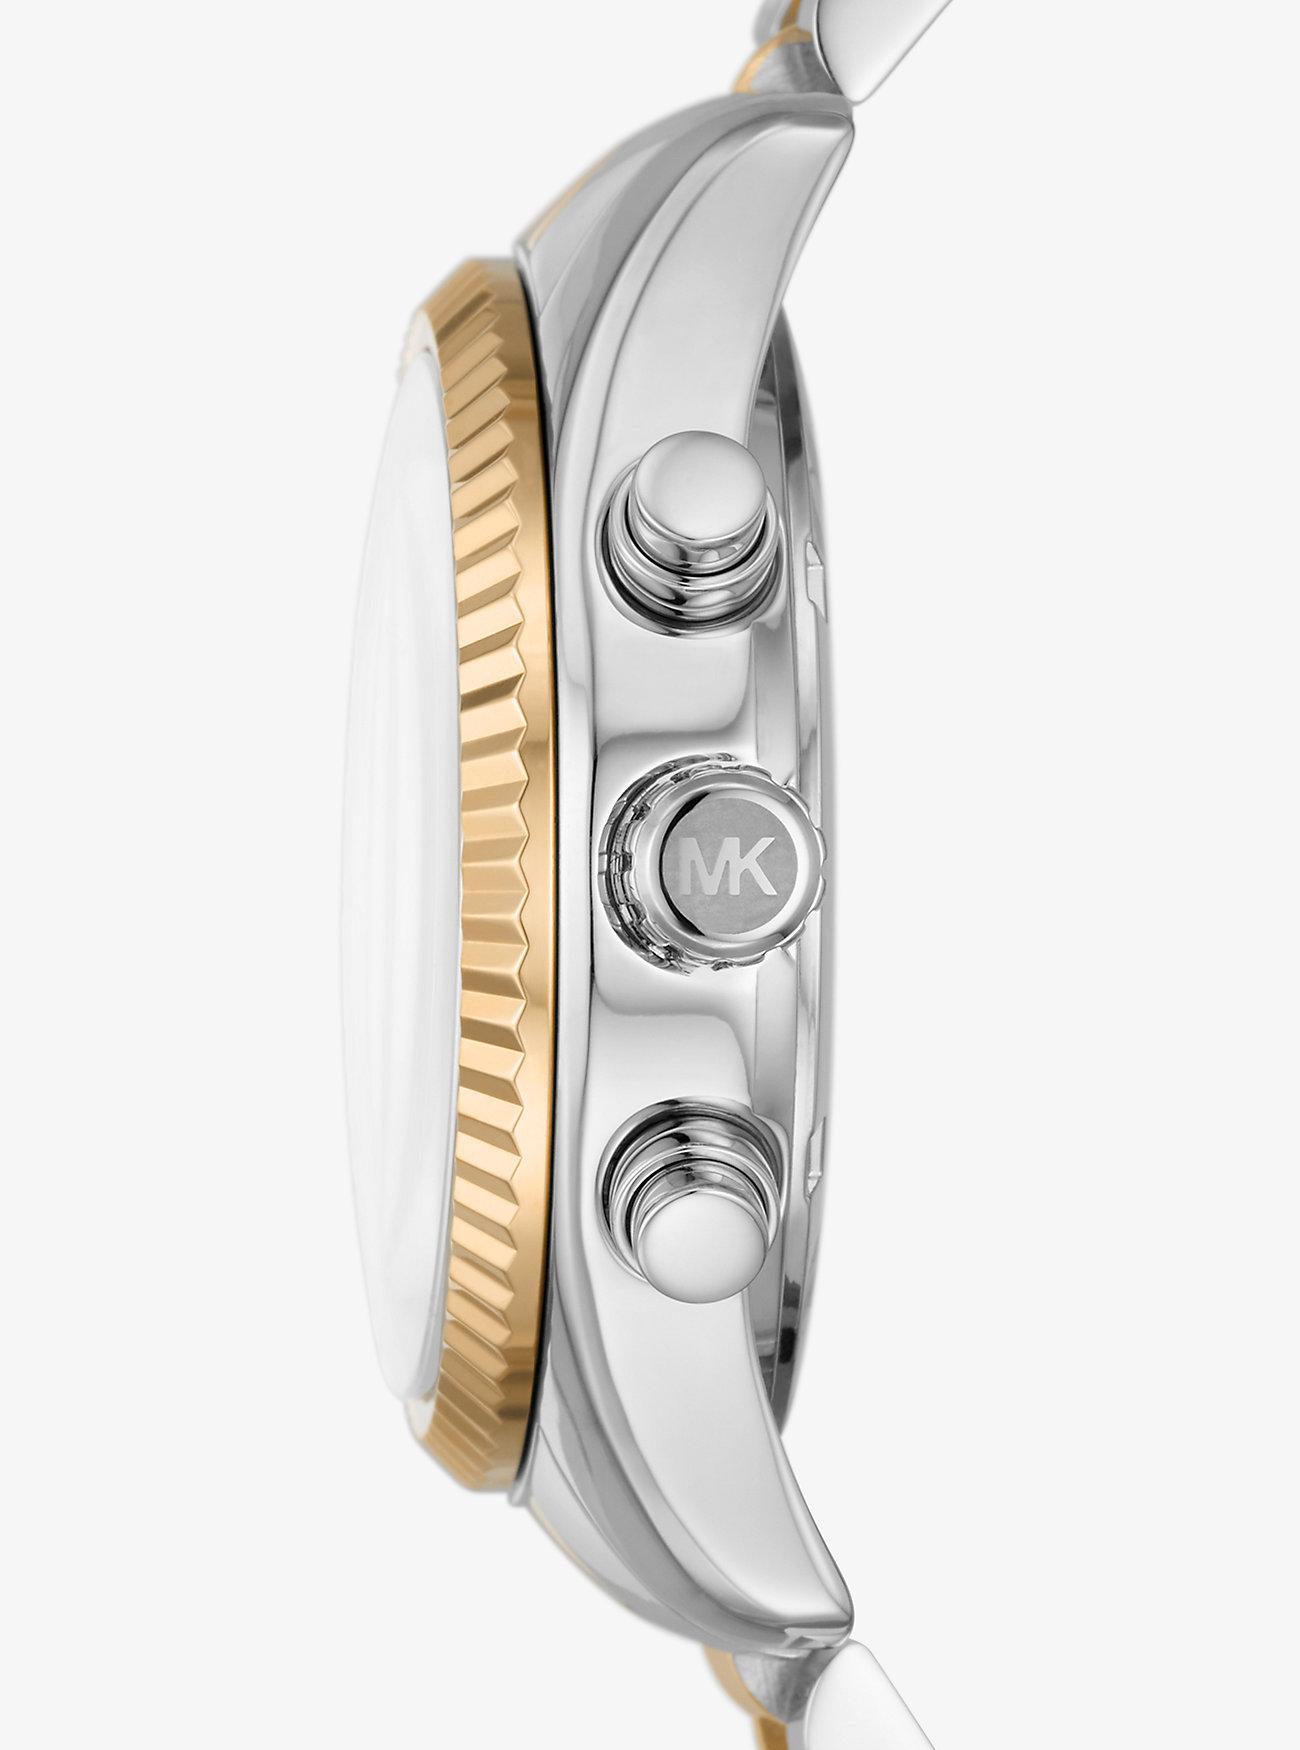 Đồng Hồ Michael Kors Lexington Two-Tone Watch Nữ Bạc Vàng